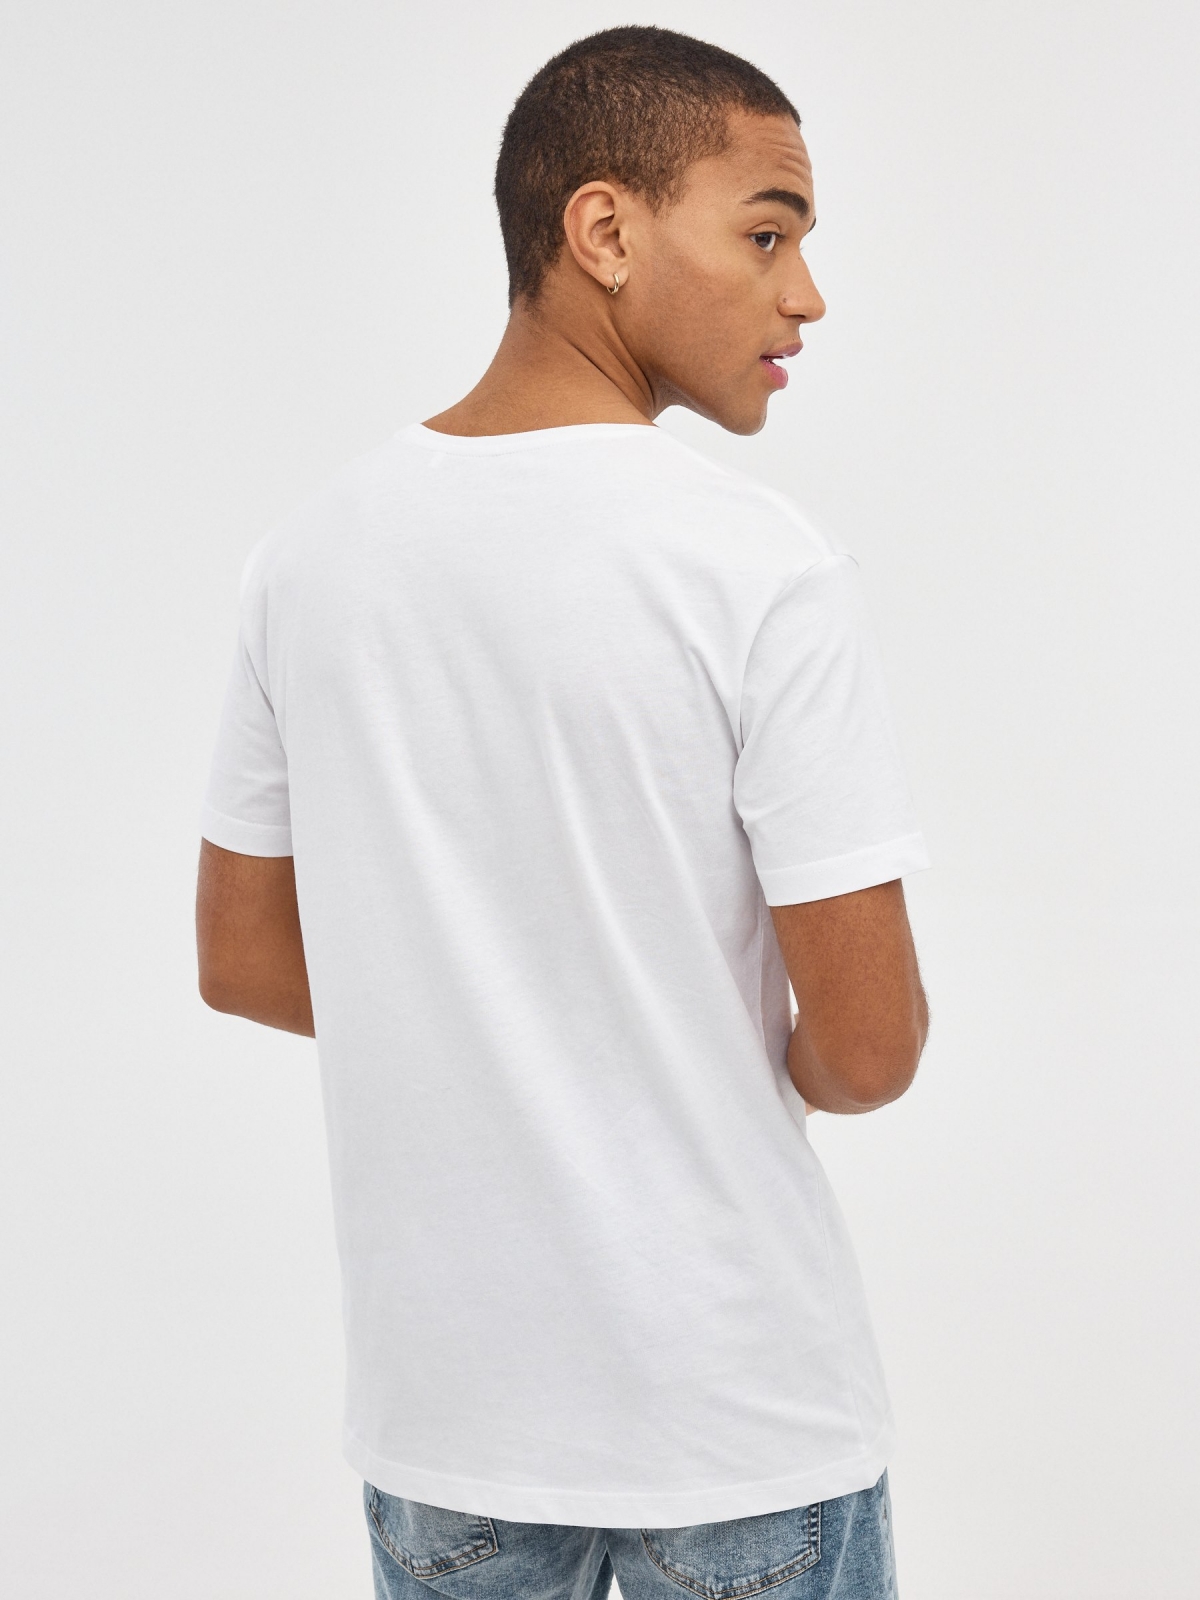 Camiseta básica cuello pico blanco vista media trasera